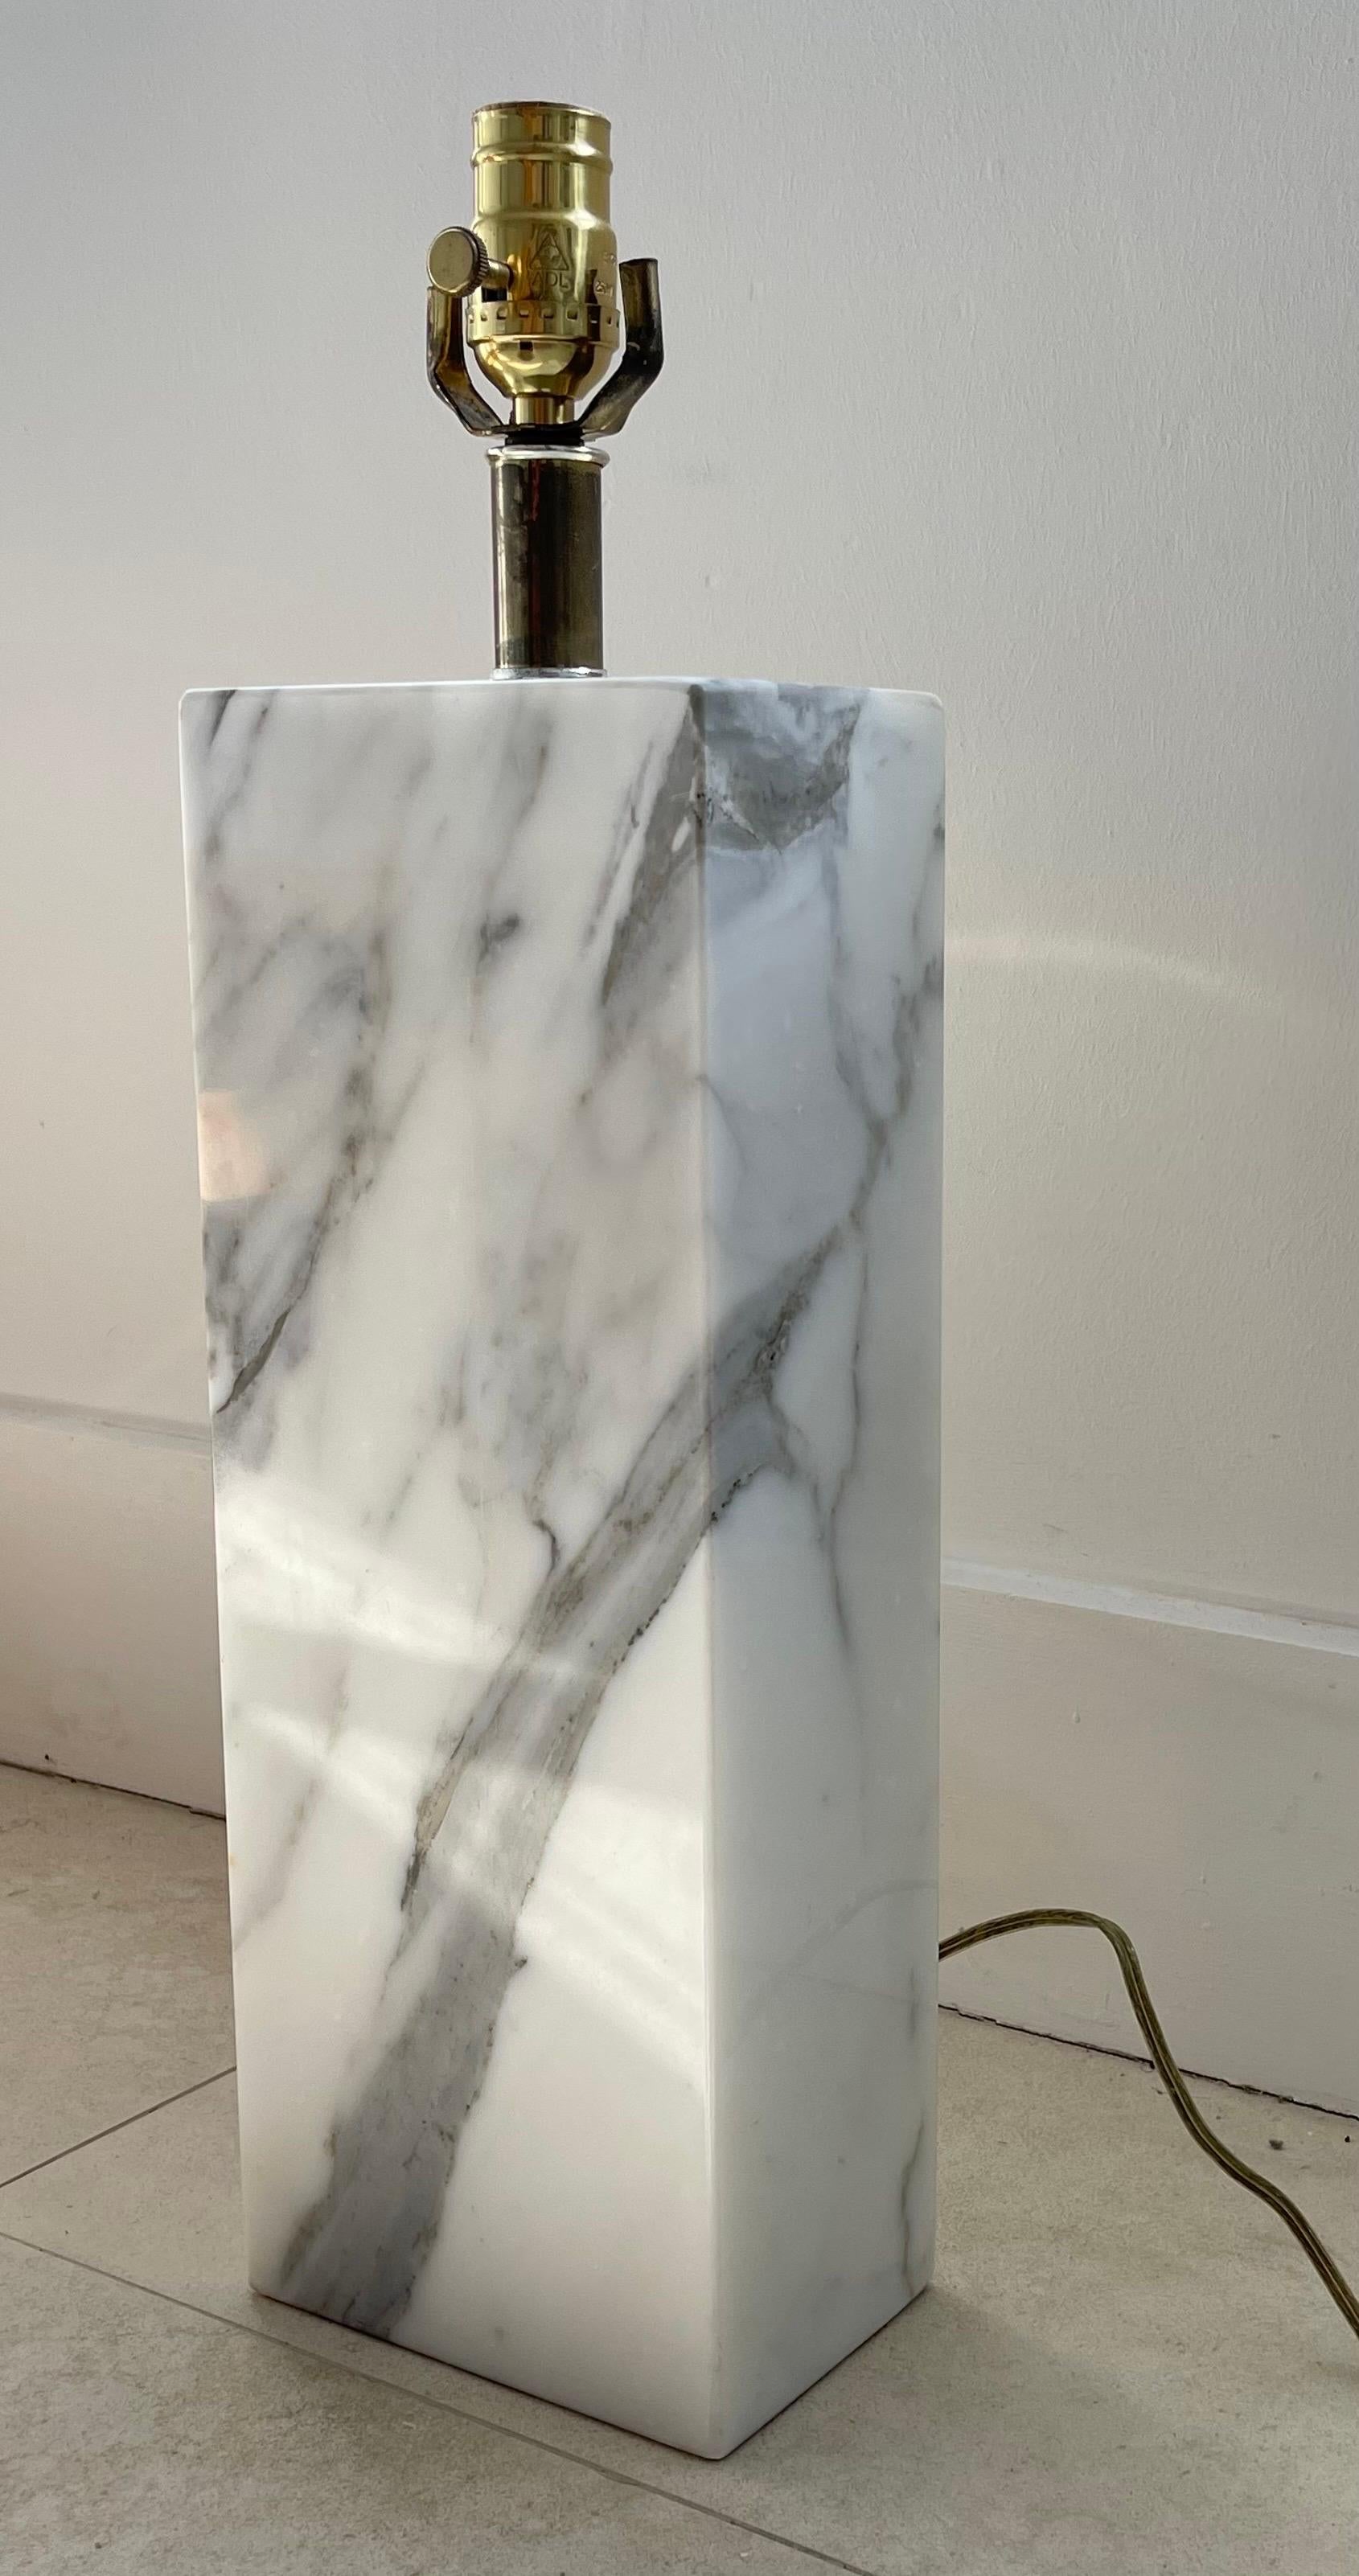 Monolithische Tischleuchte aus poliertem Marmor mit Messingbefestigung, entworfen von Elizabeth Kauffer für NESSEN LIGHTING, ca. 1950er Jahre.

Diese Lampe ist eine von zwei in einem unangepassten asymmetrischen Paar. Bitte sehen Sie die zweite